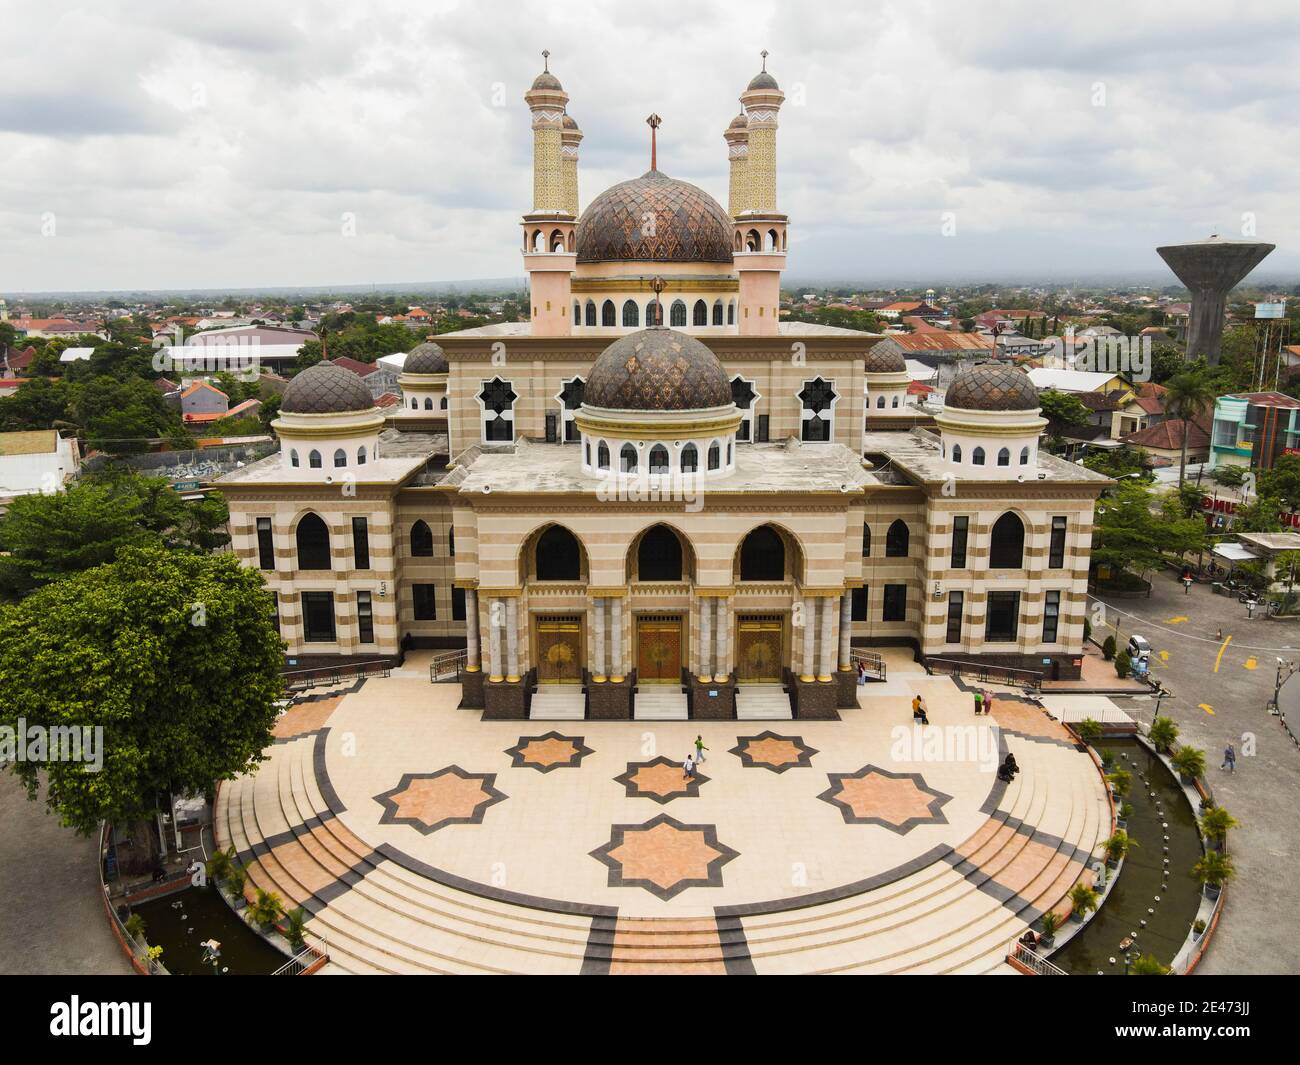 Aerial view of the mosque in Klaten, Indonesia starting from the Door. Klaten, Indonesia - December 2020. Stock Photo